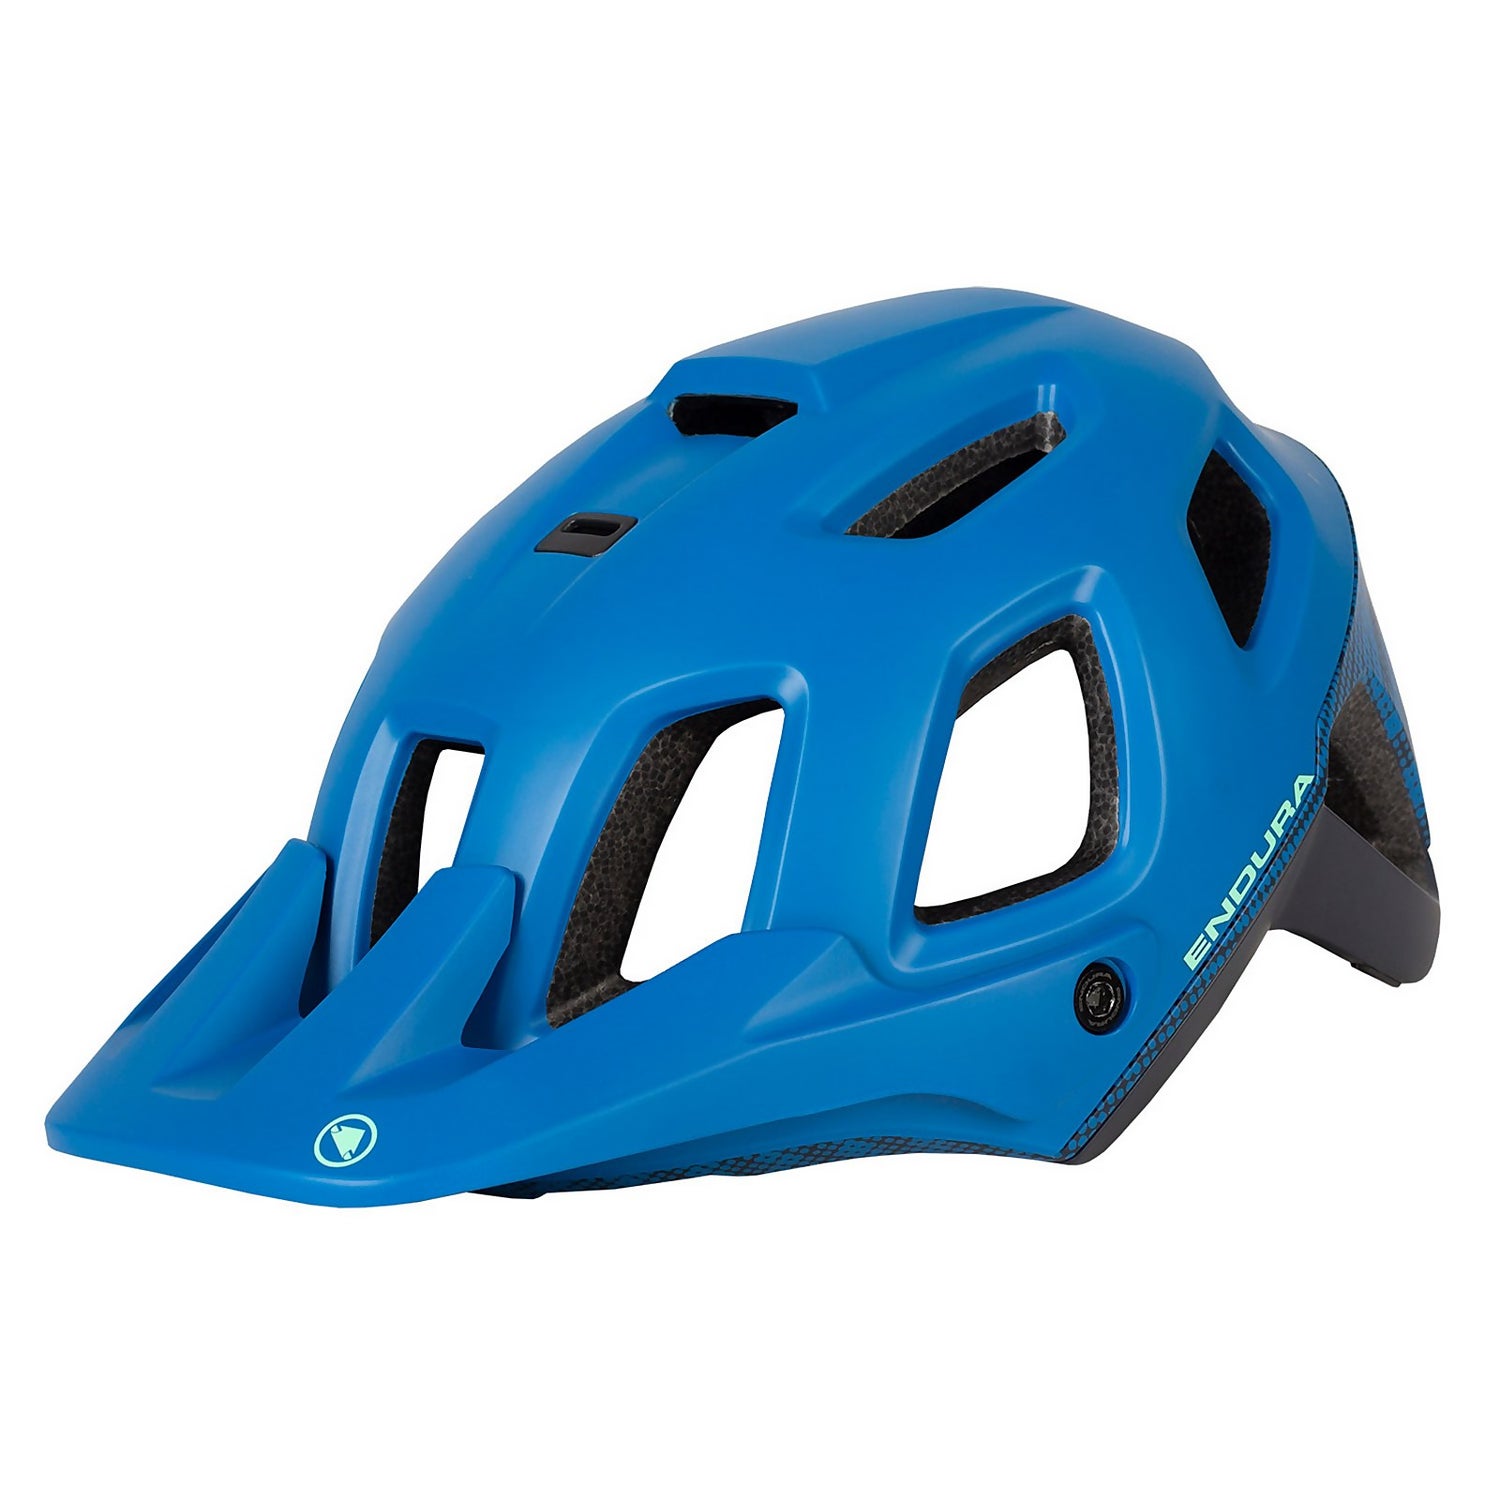 Men's SingleTrack Helmet II - Azure Blue